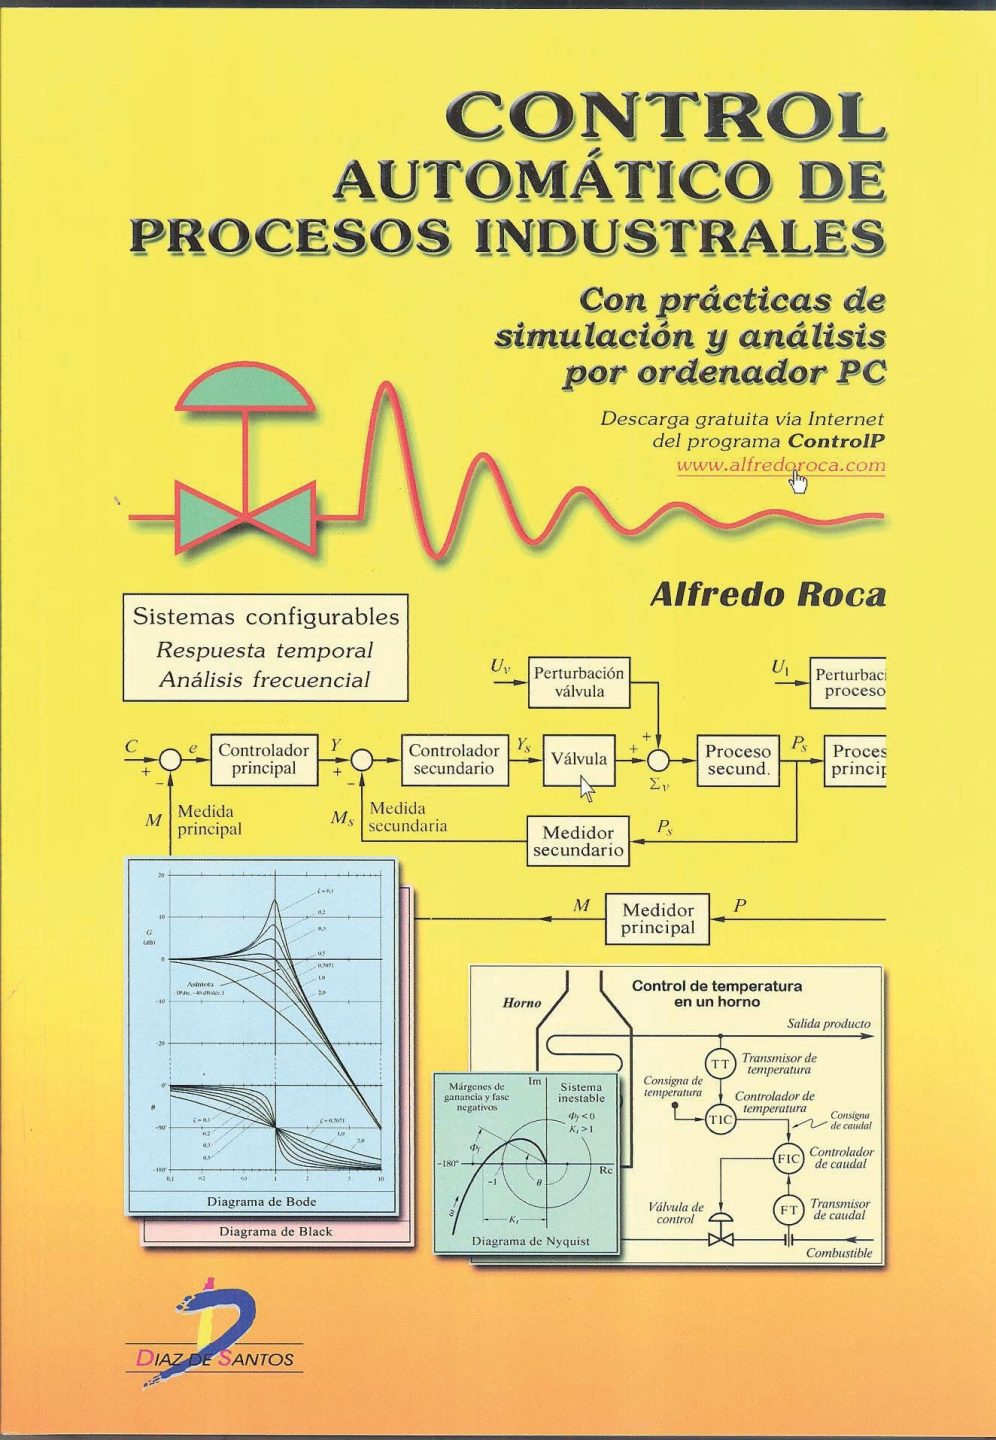 Control Automático de Procesos Industriales 1 Edición Alfredo Roca PDF